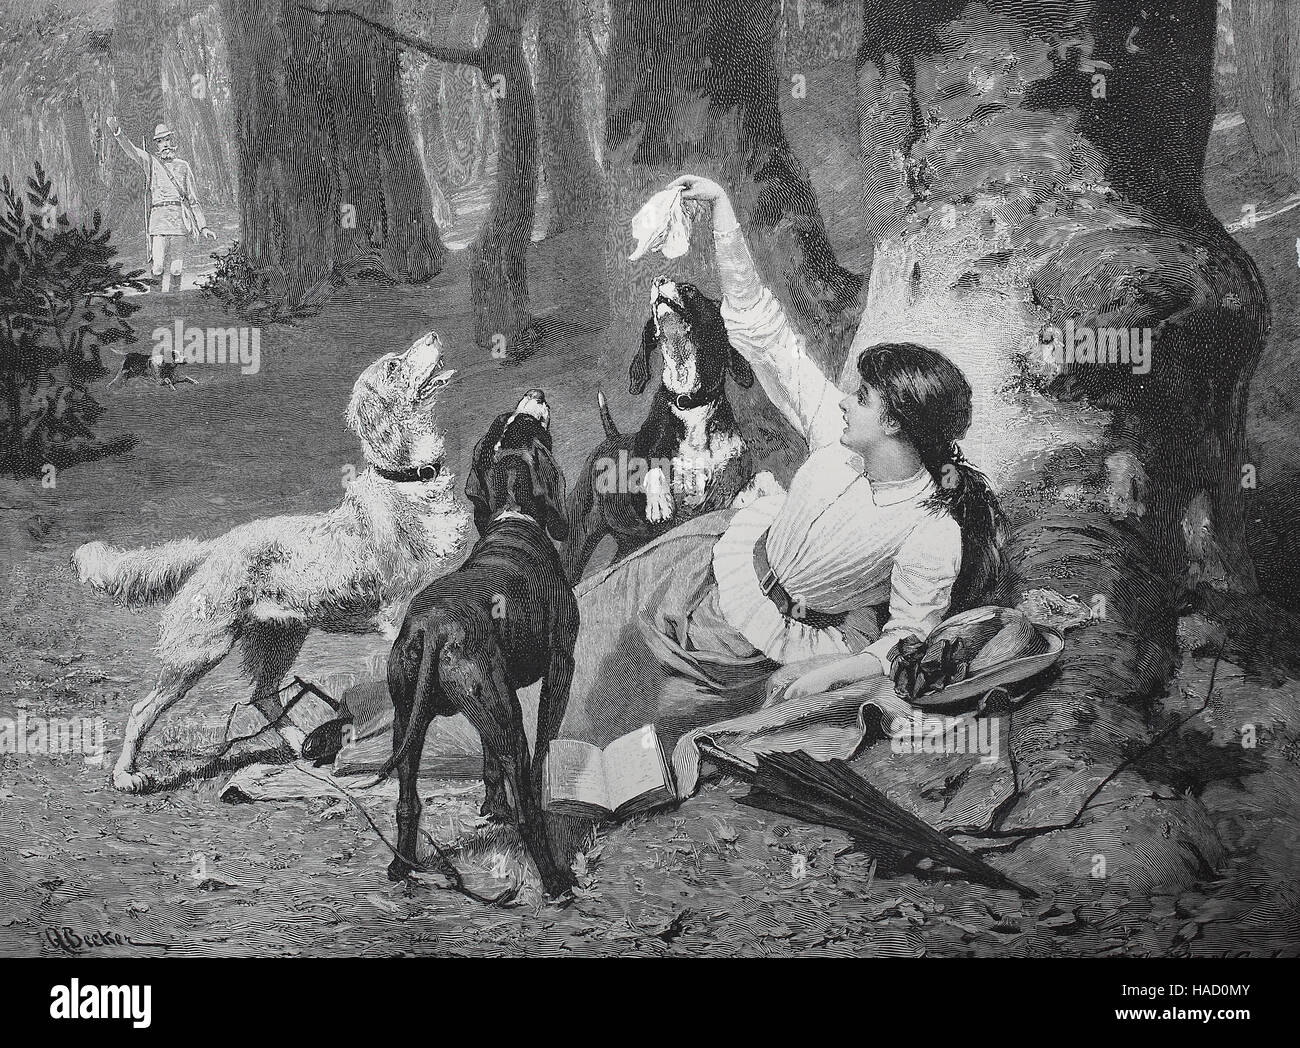 Perros de Caza han encontrado la chica desaparecida en el bosque, Ilustración publicada en 1880 Foto de stock